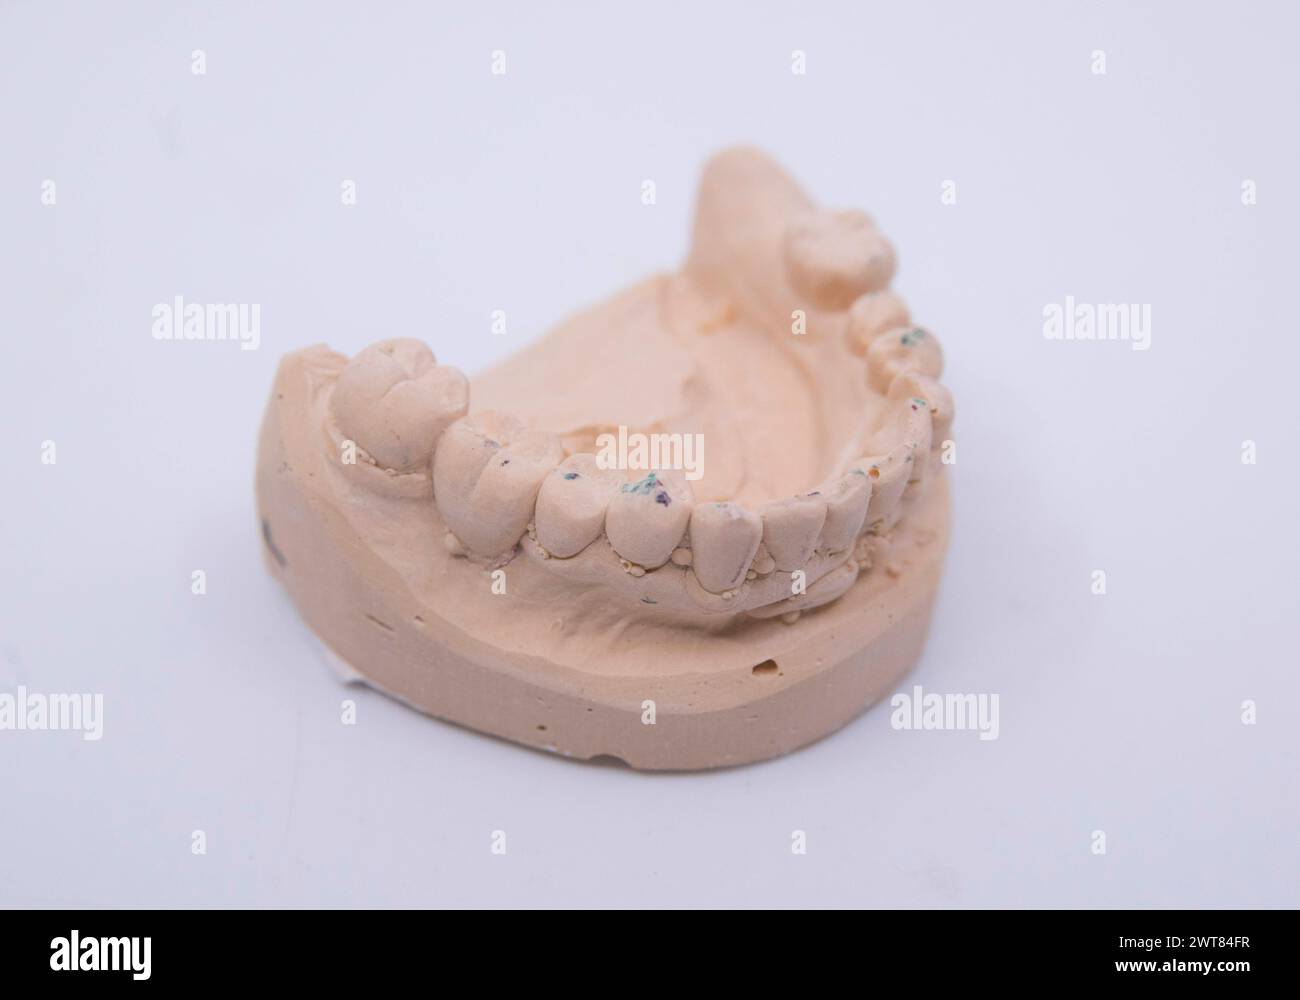 Trattamento dentale e attrezzature mediche per la salute dei pazienti trattamento dentista e attrezzature mediche Foto Stock